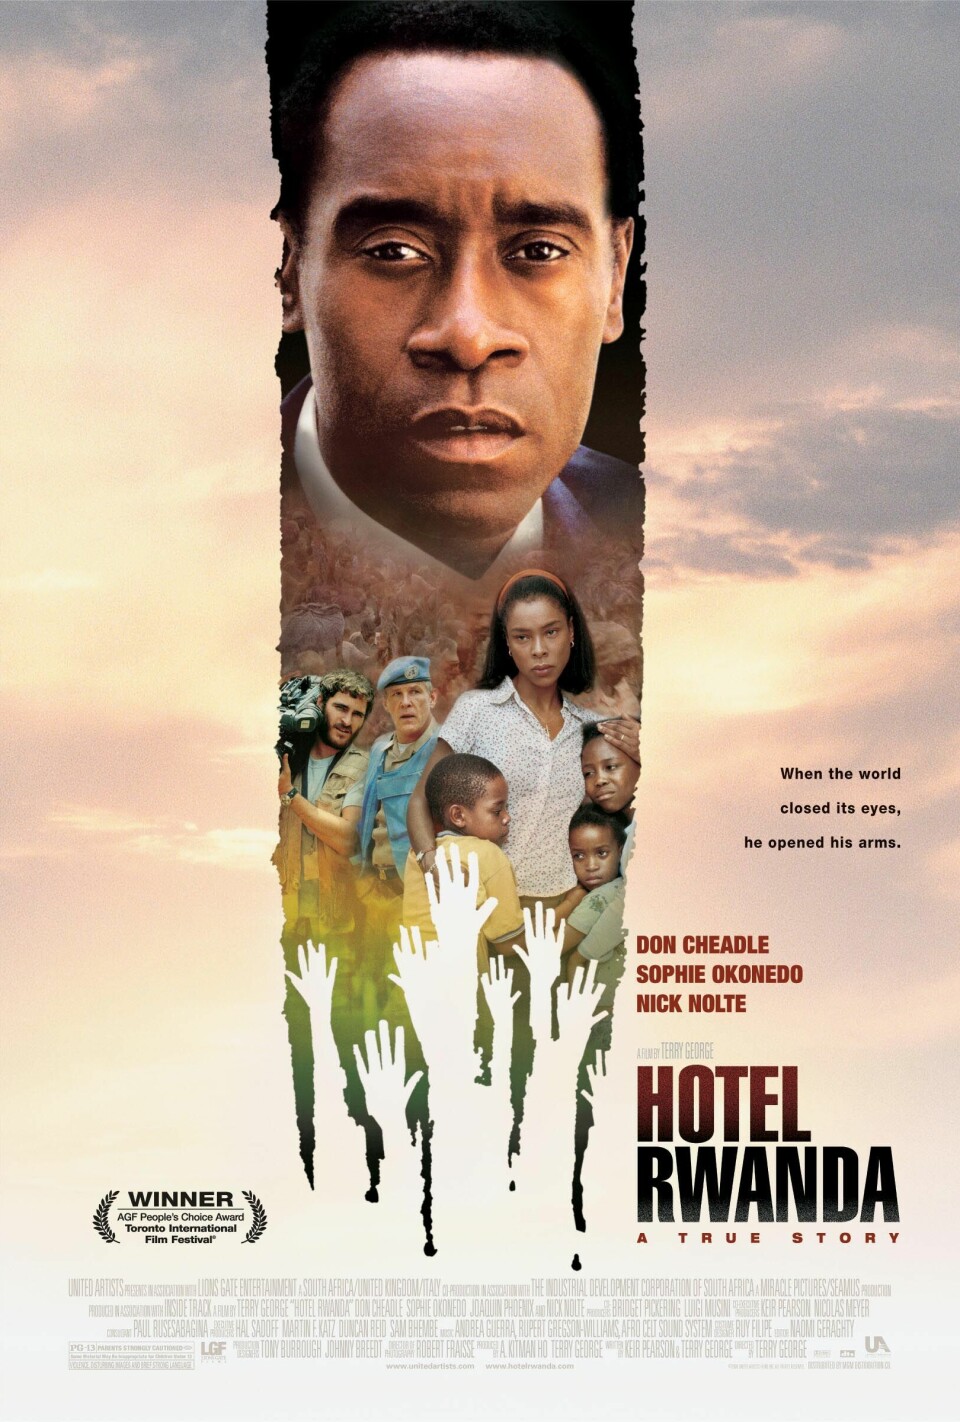 I filmen Hotel Rwanda fra 2004 var det Don Cheadle som spilte hotellsjefen Paul Rusesabagina. Blant historikere og forskere er det stor grad av enighet om at filmen ikke gir noe absolutt korrekt bilde av begivenhetene under folkemordet i 1994. Også hotellsjefens 'helterolle' er omstridt.